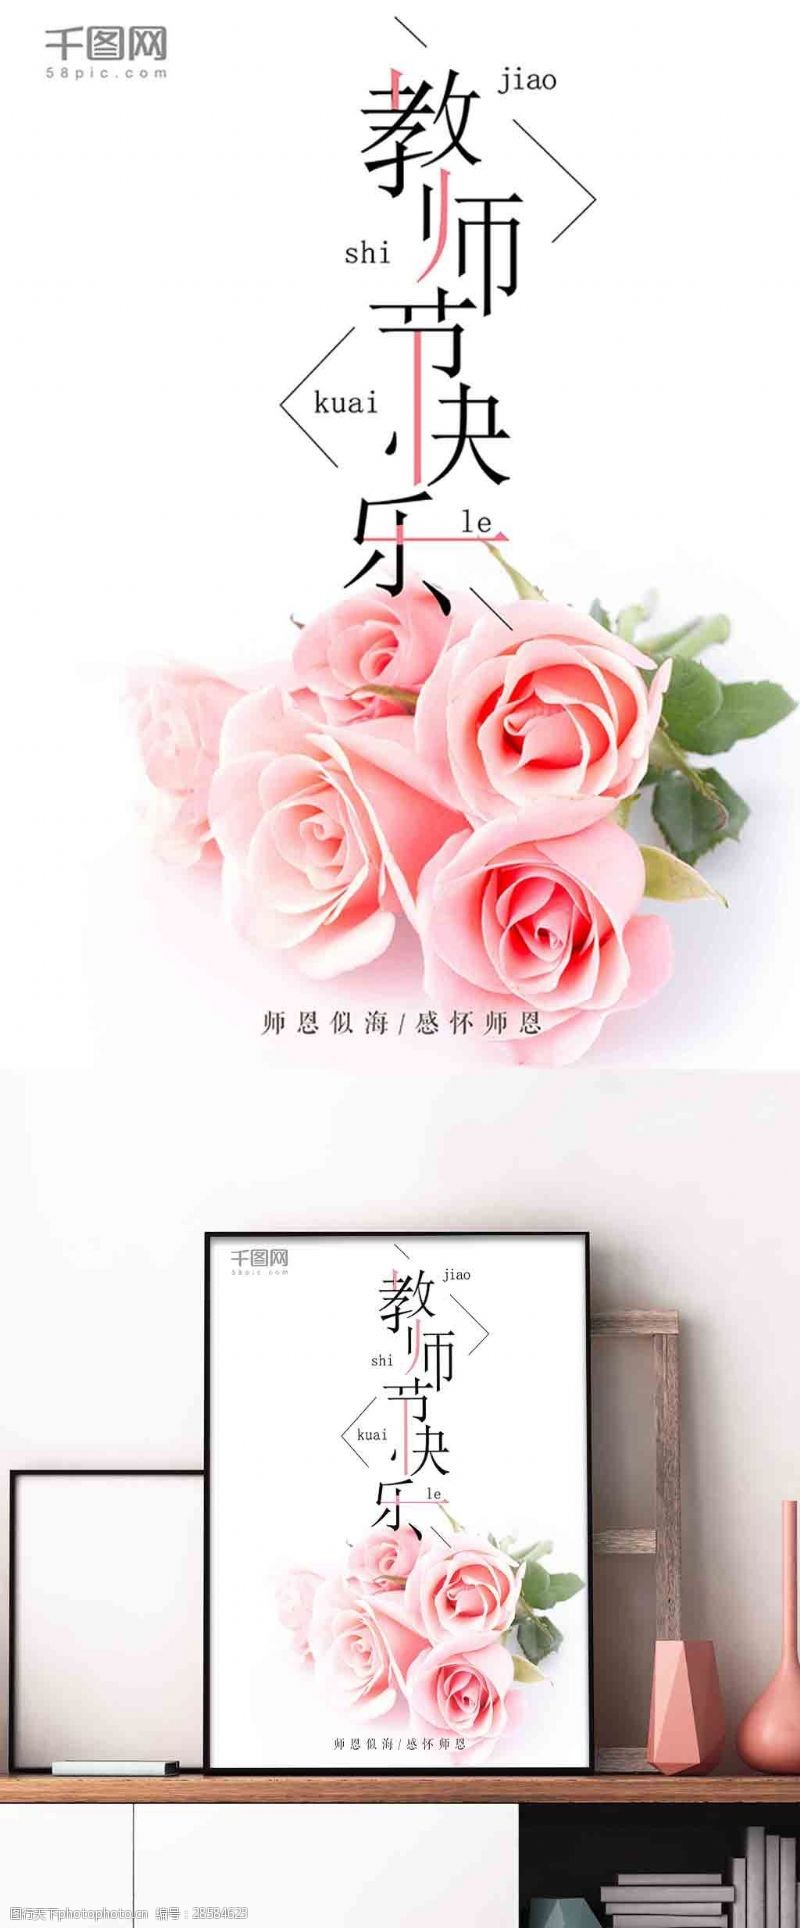 简约排版设计粉色玫瑰教师节快乐感念师恩宣传海报